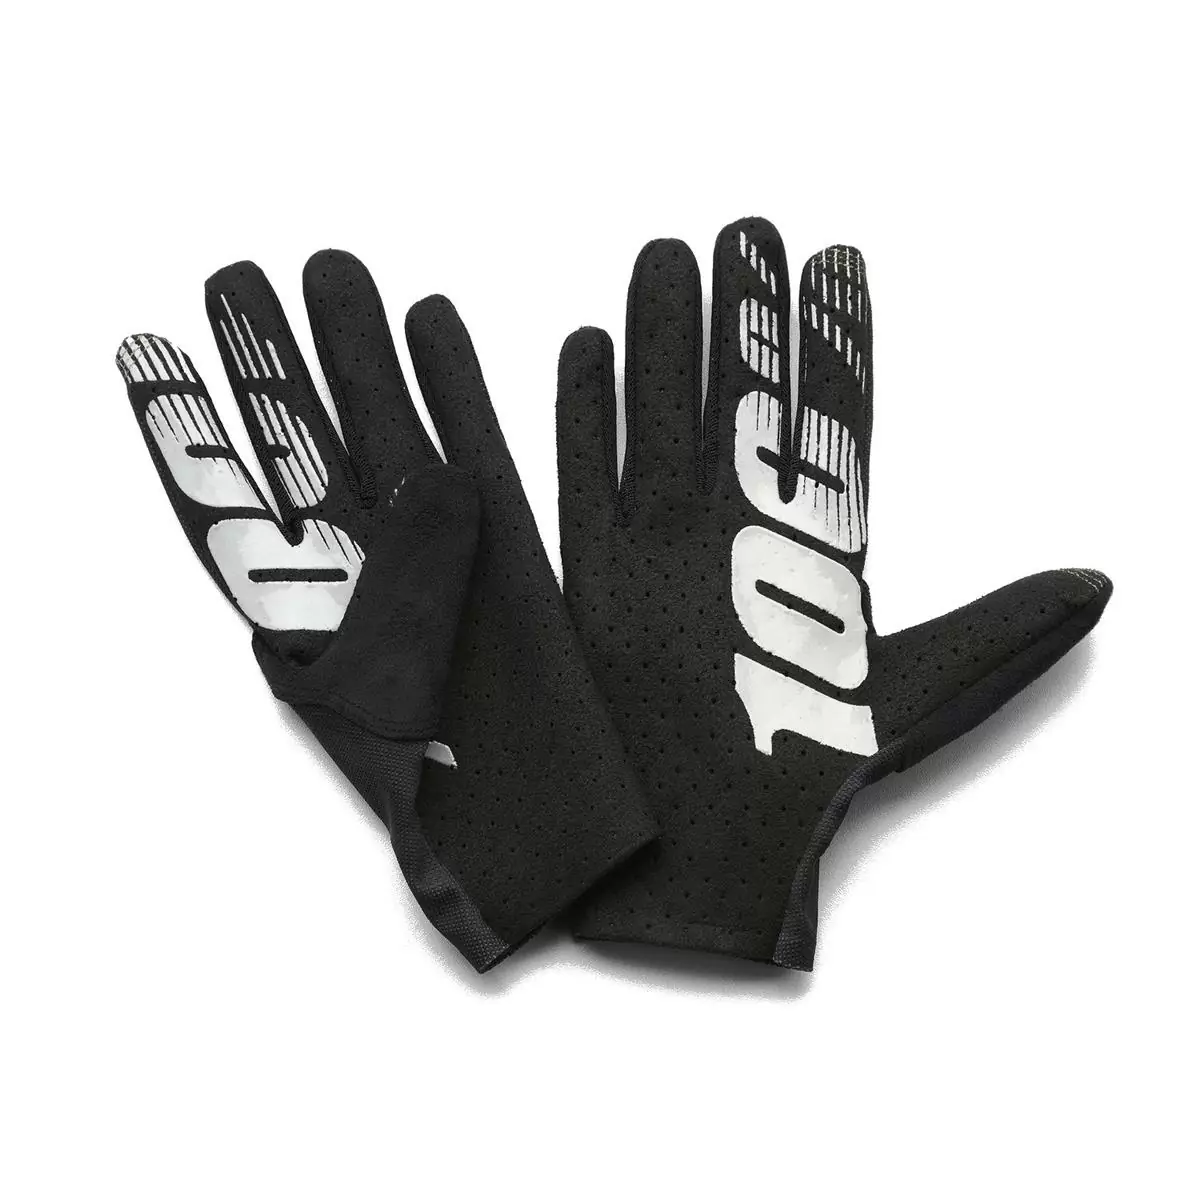 Handschuhe Celium Grau/Schwarz Größe S #1